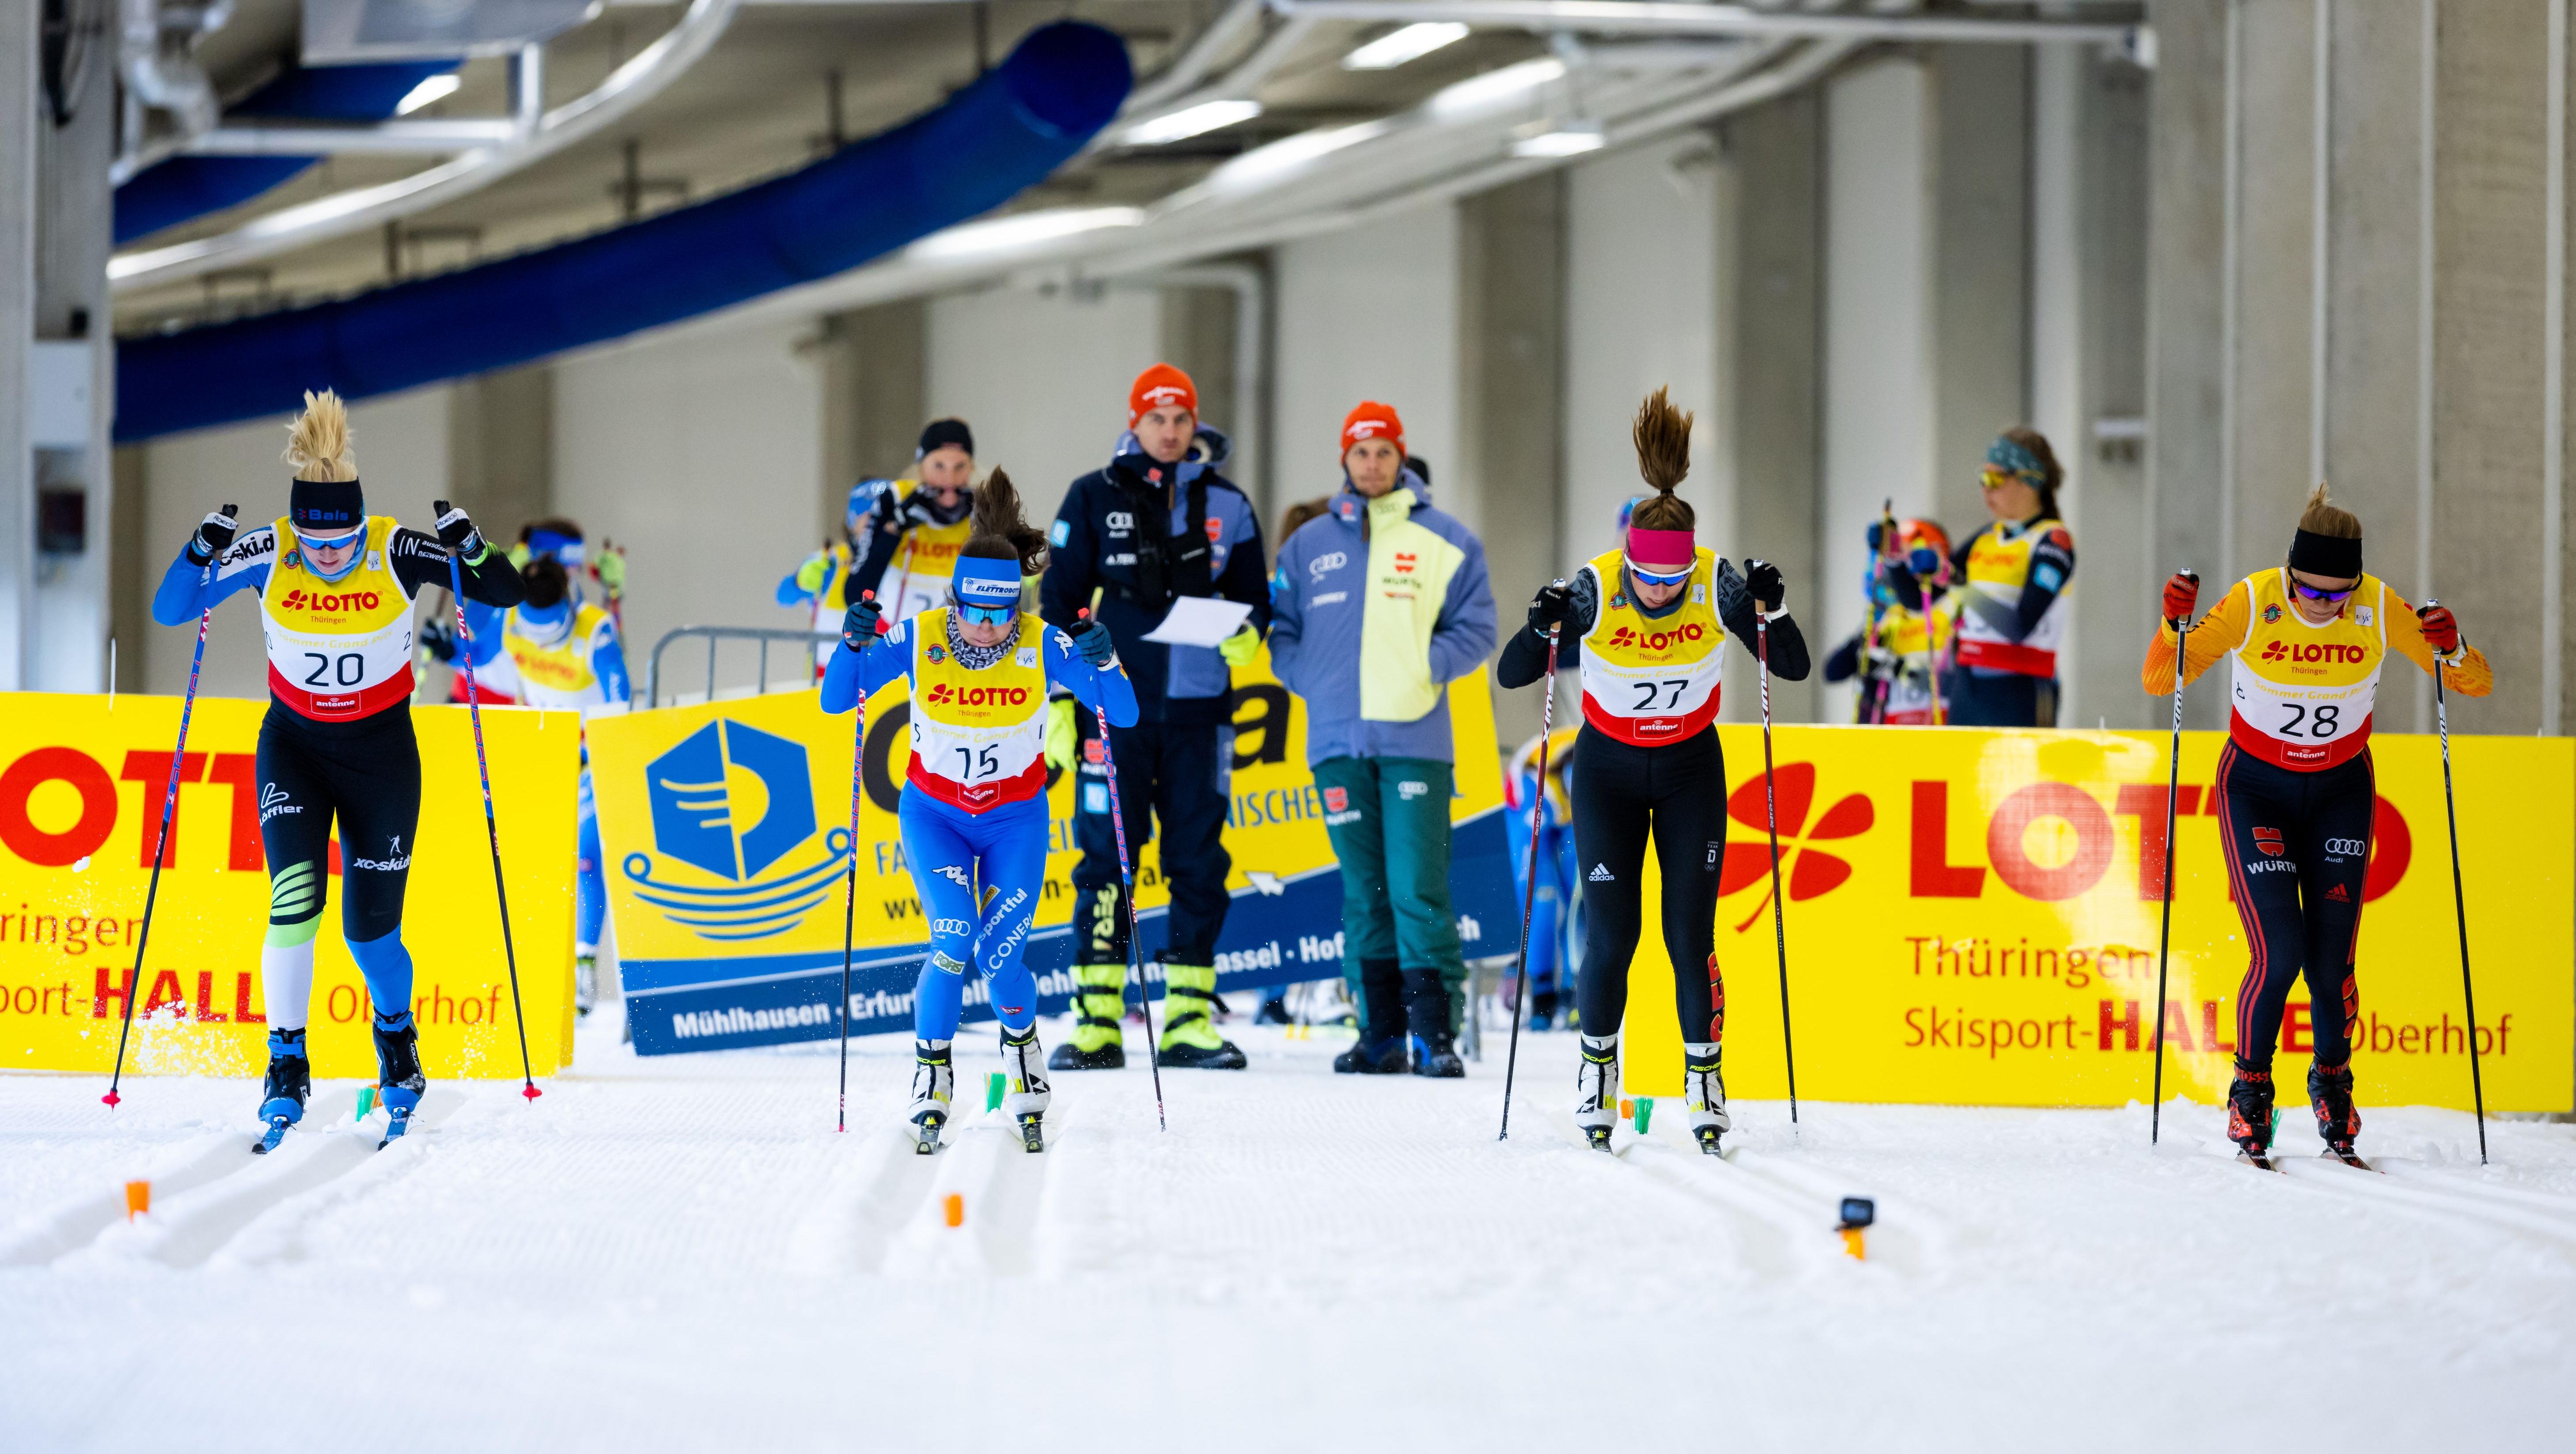 Power trifft Eleganz: Die Sprint-Wettkämpfe in der LOTTO Thüringen Skisport-HALLE sorgen einmal mehr für packenden Wintersport. Foto: Christian Heilwagen